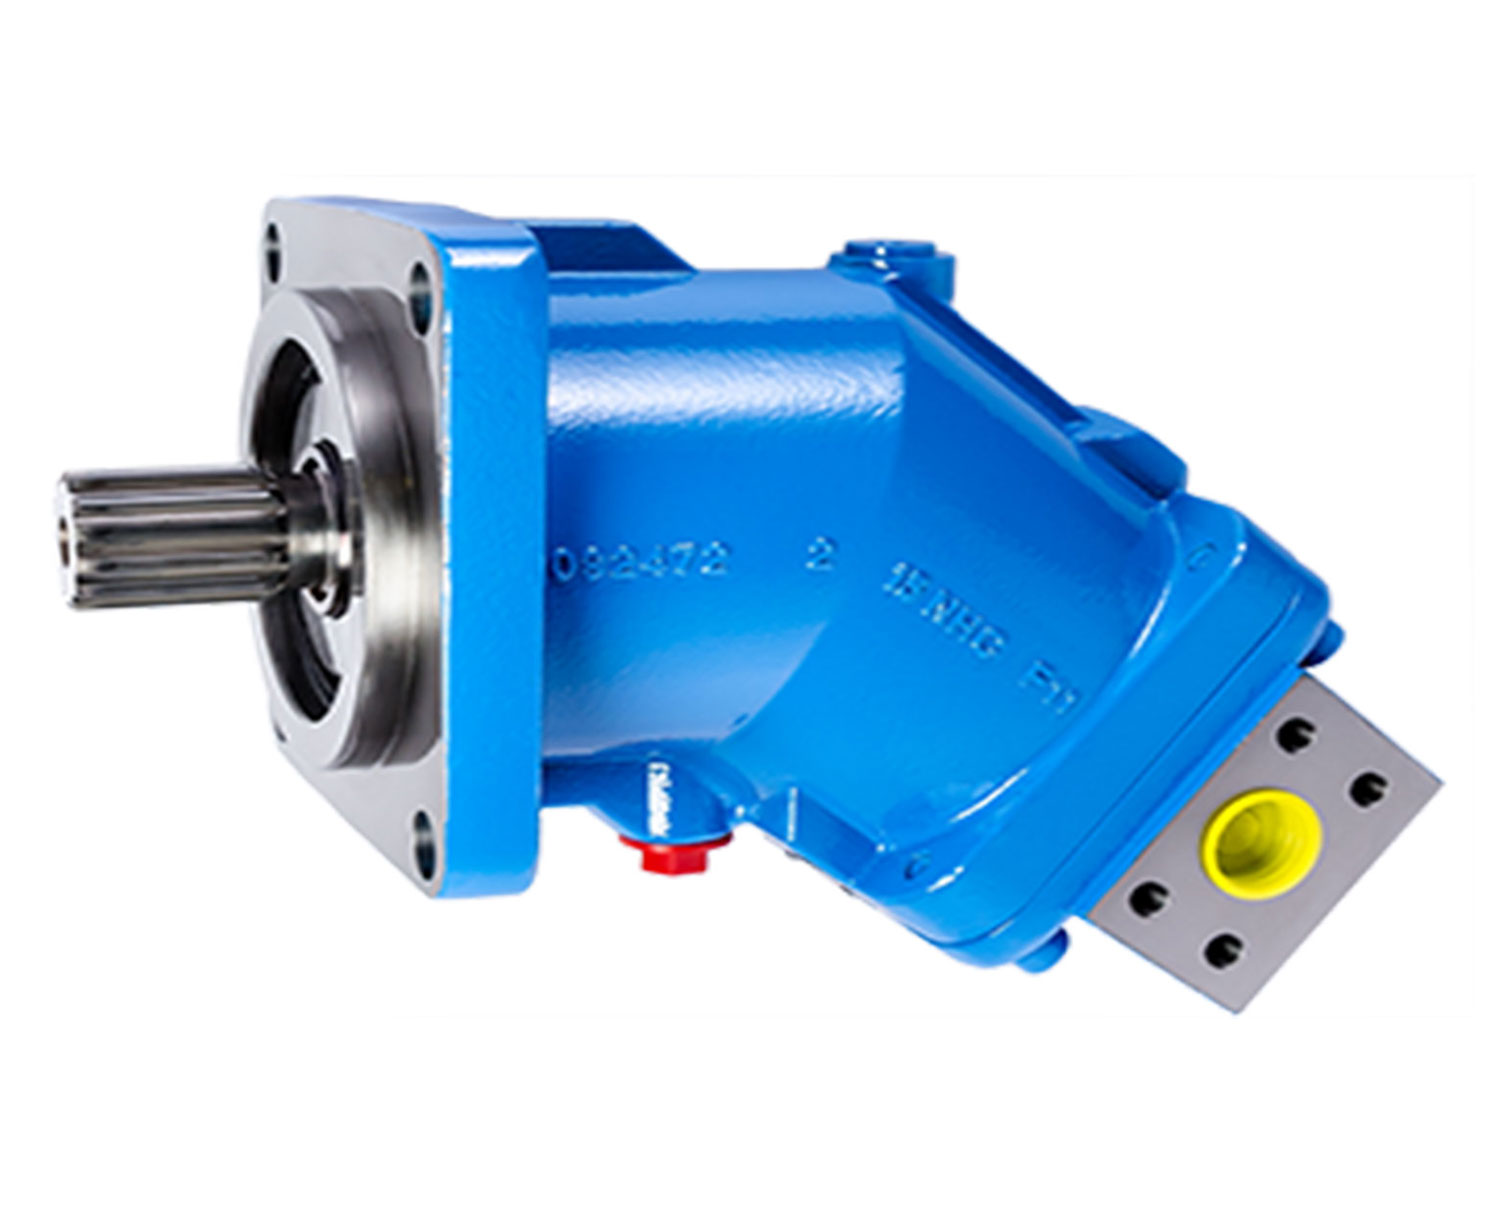 LKW-Hydraulik Motor Baureihe MA Hydro-Leduc, blau